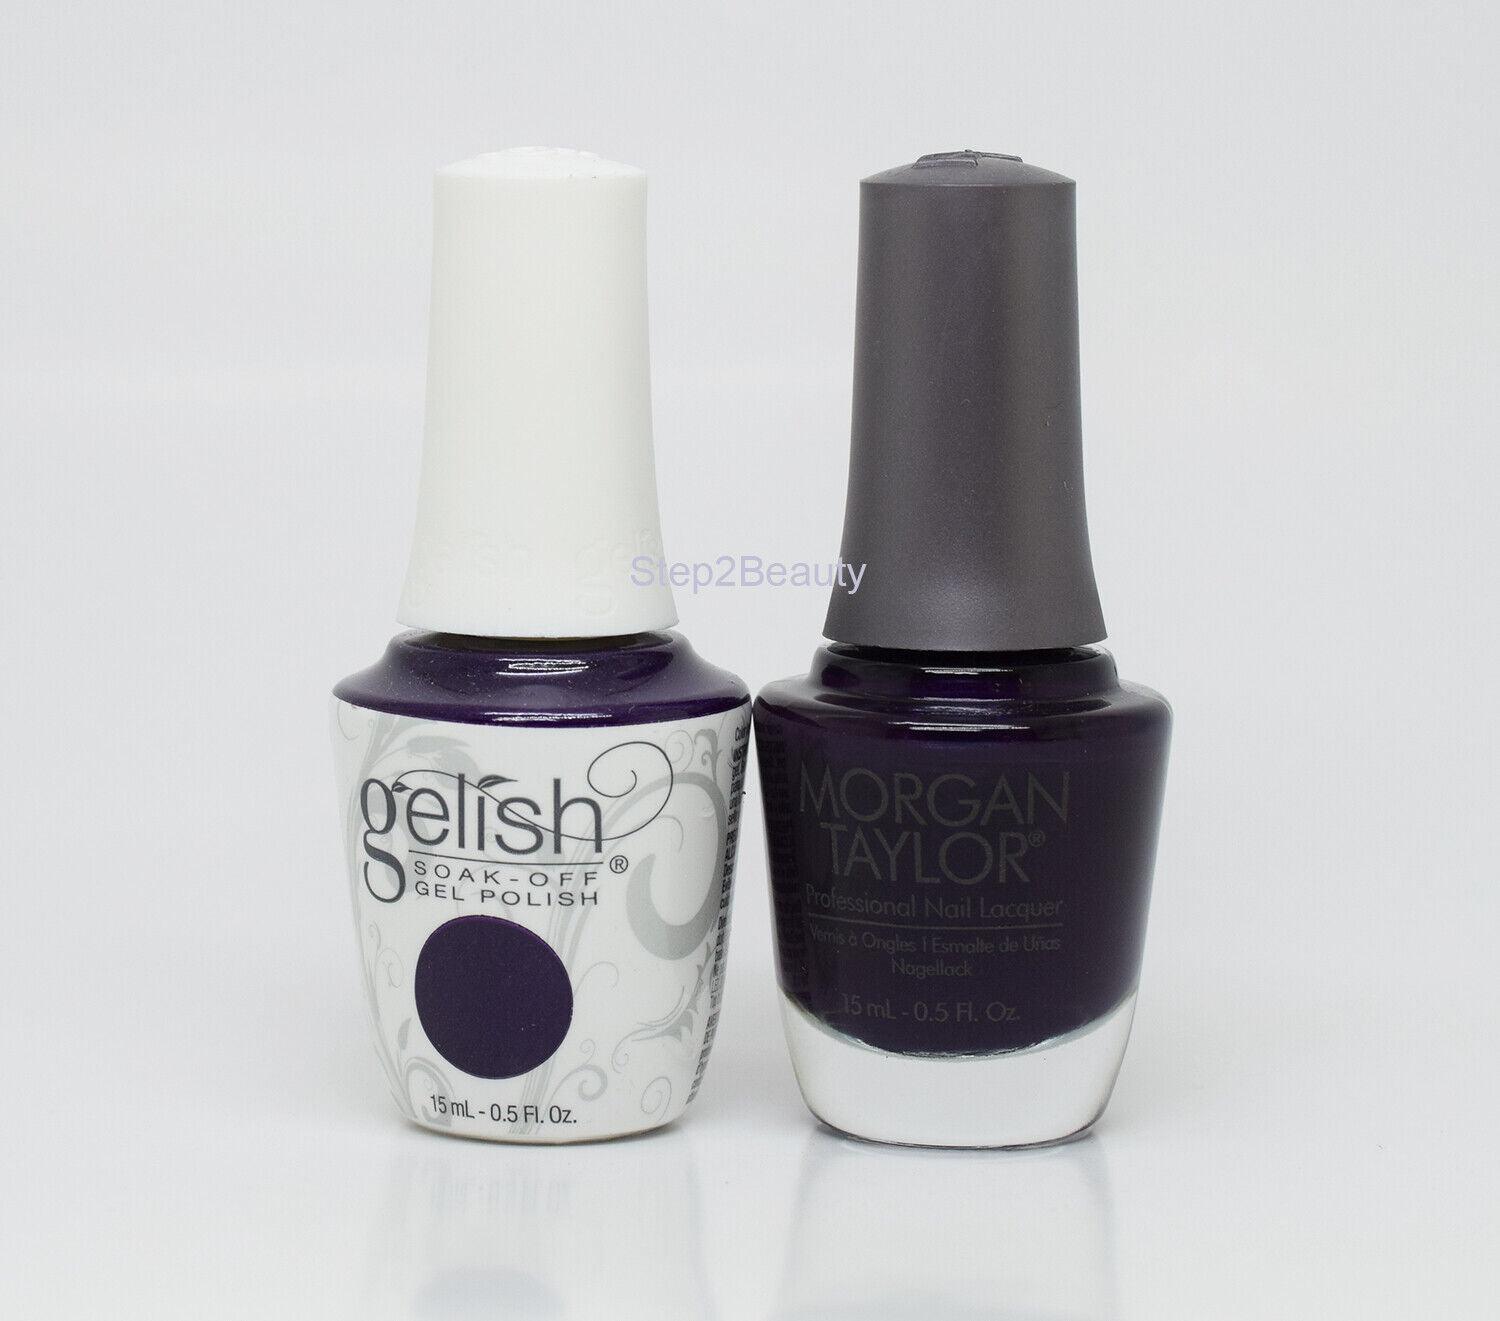 Gelish DUO Soak Off Gel Polish + Morgan Taylor Nail Lacquer - #864 Diva